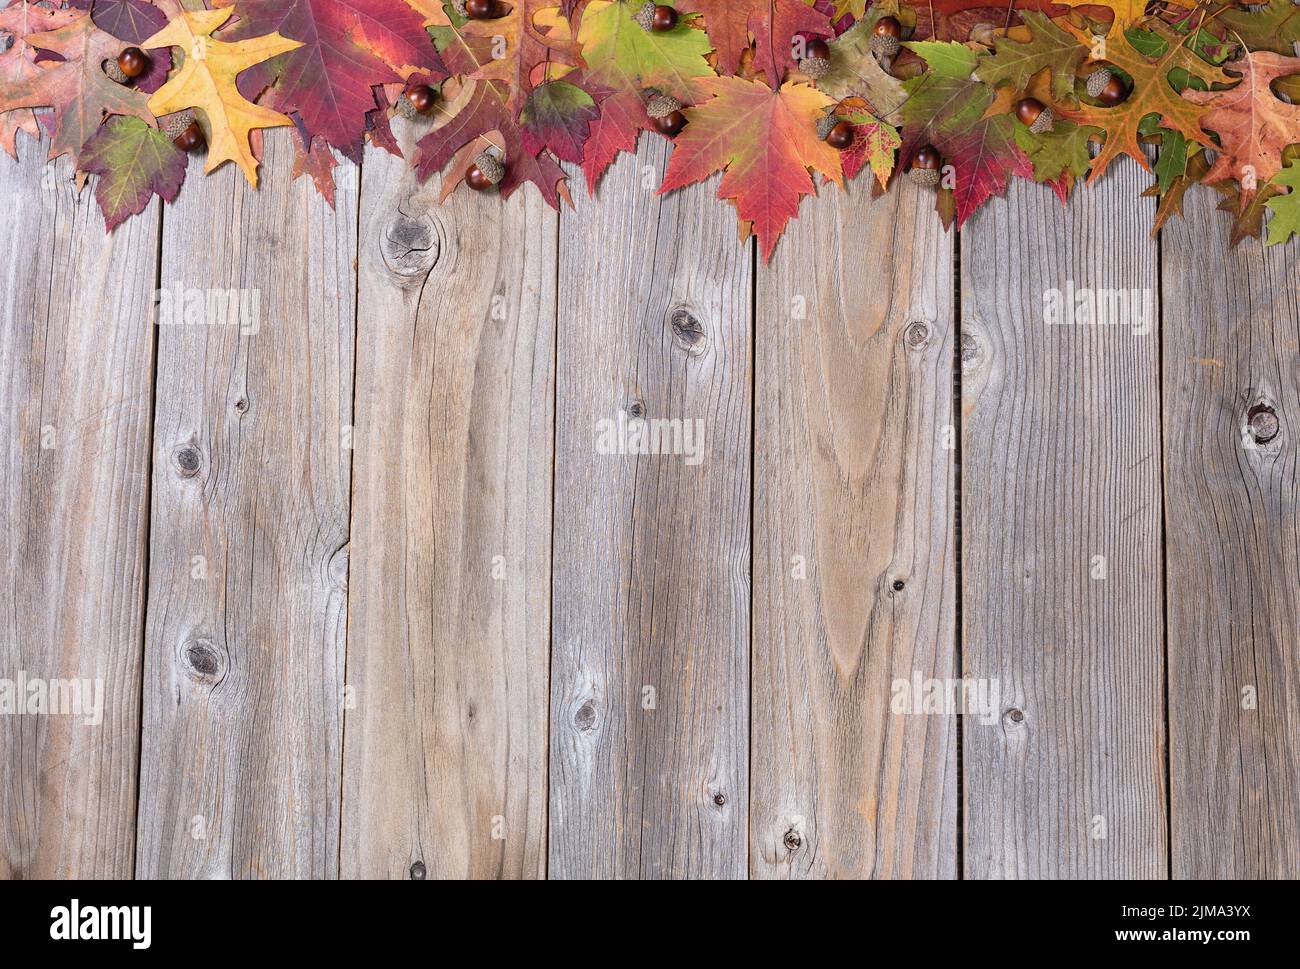 Haut bordure de feuillages d'automne et d'acornes sur des panneaux de bois rustiques Banque D'Images